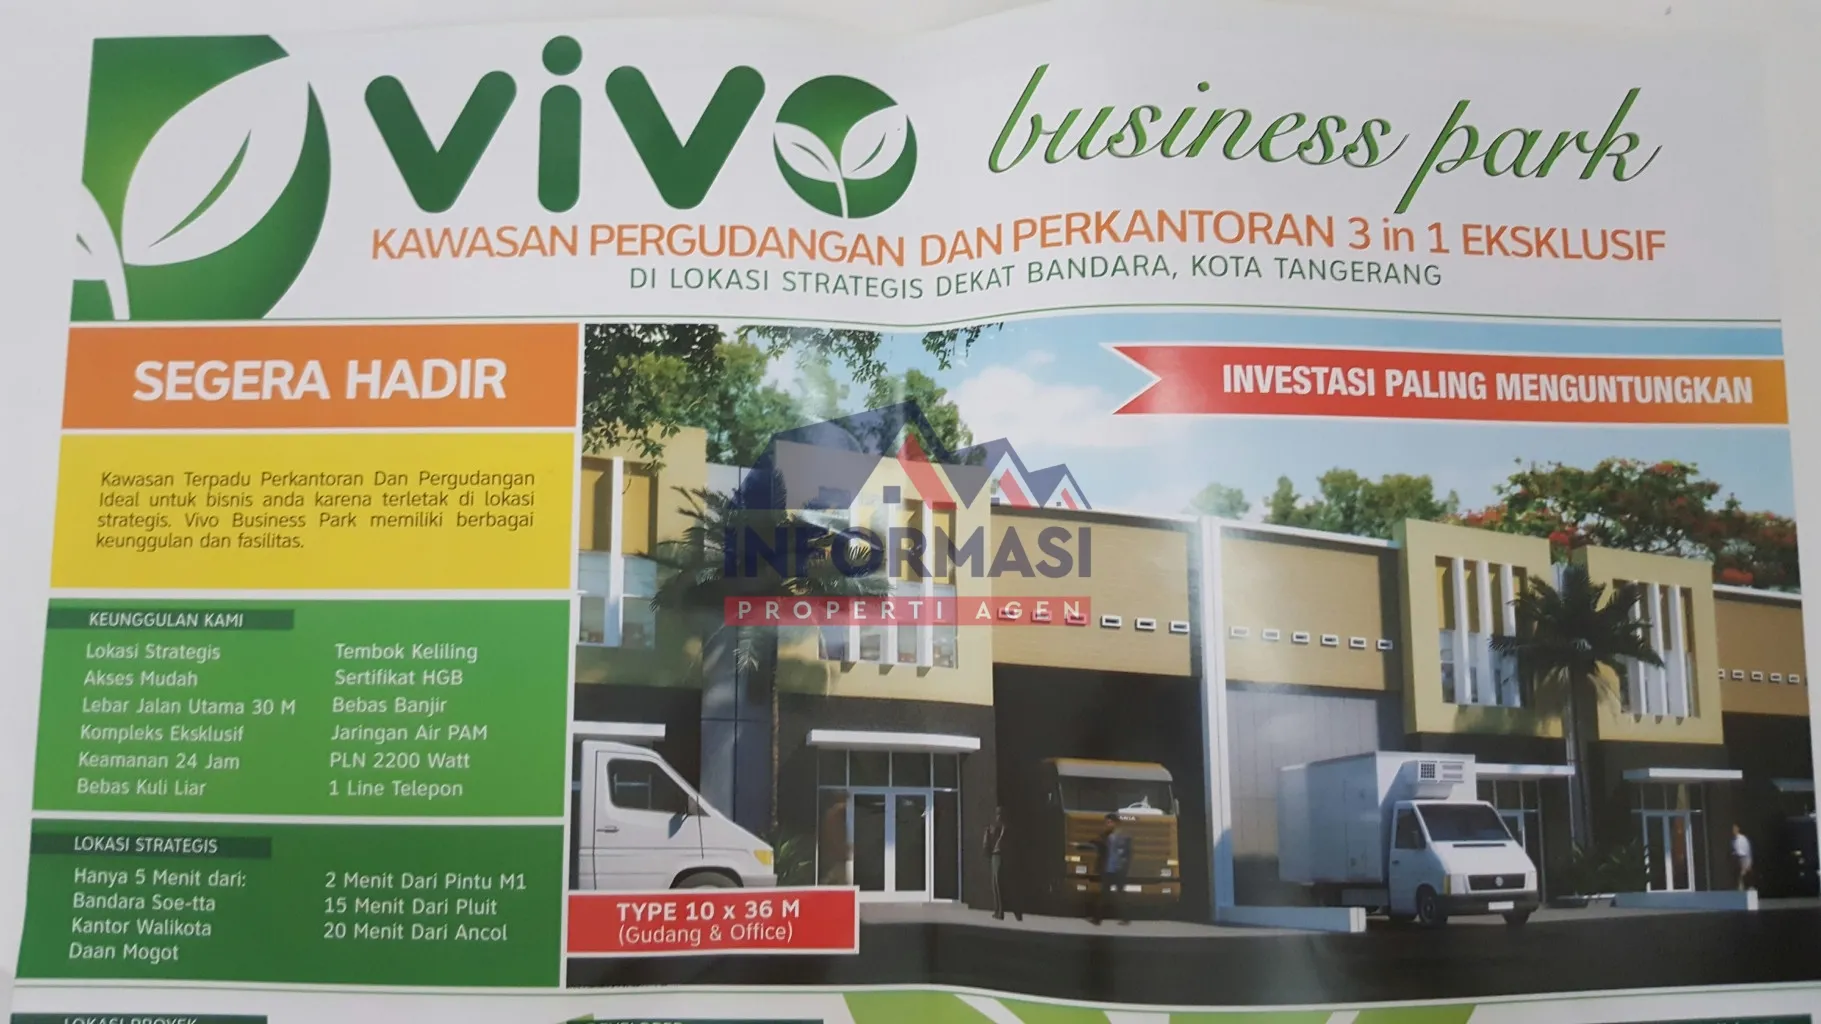 *Project VIVO Business Park